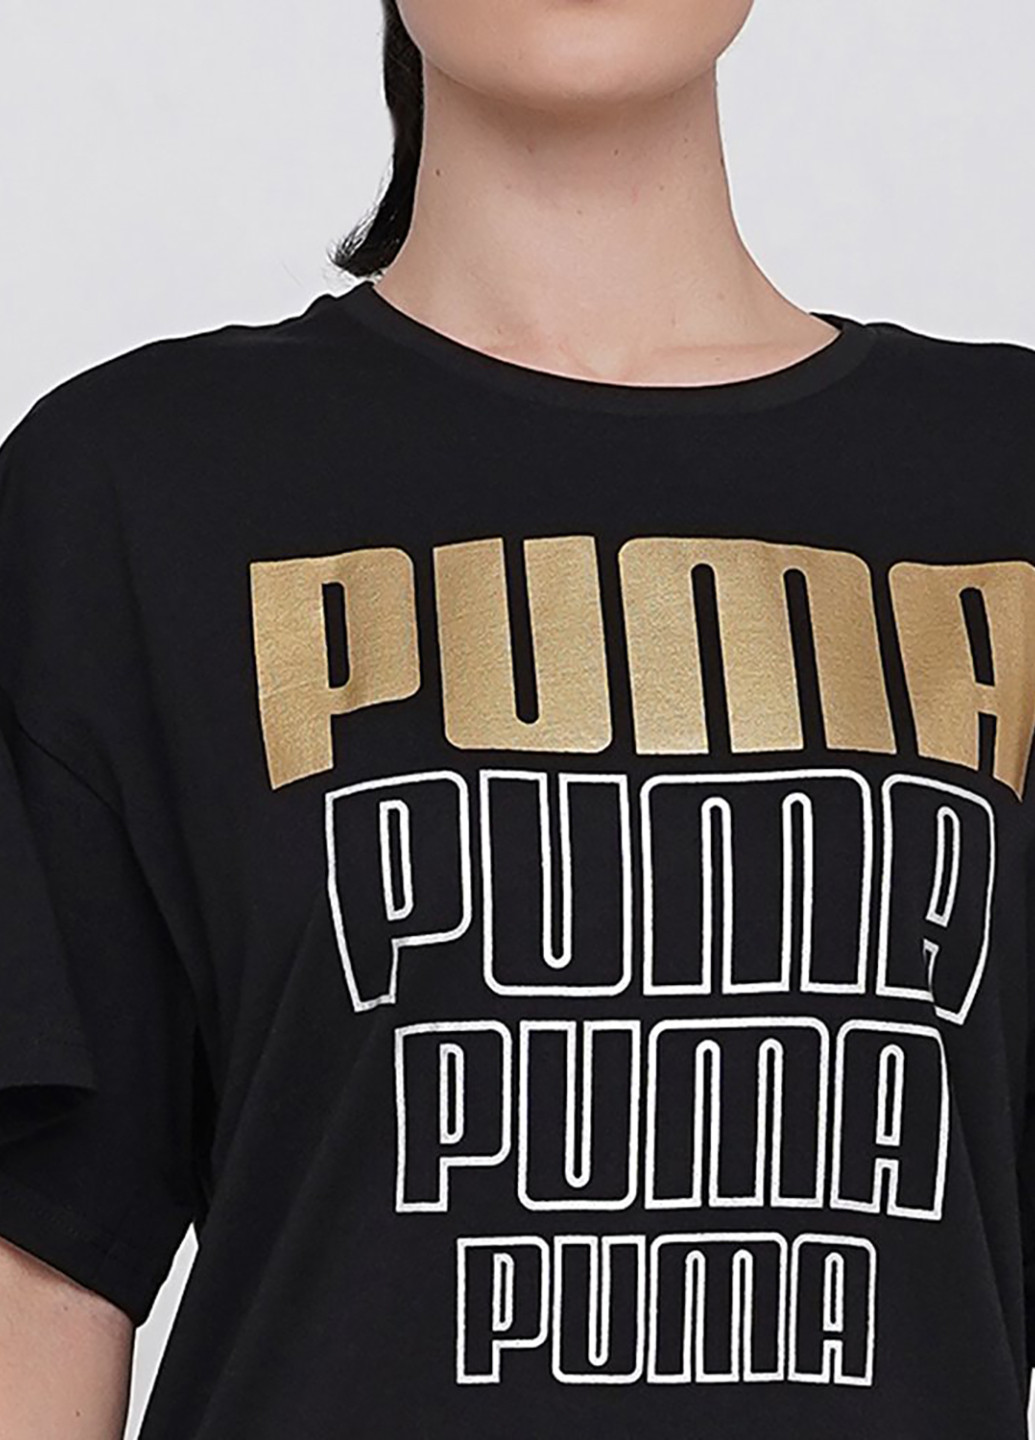 Чорна спортивна сукня сукня-футболка Puma з написами